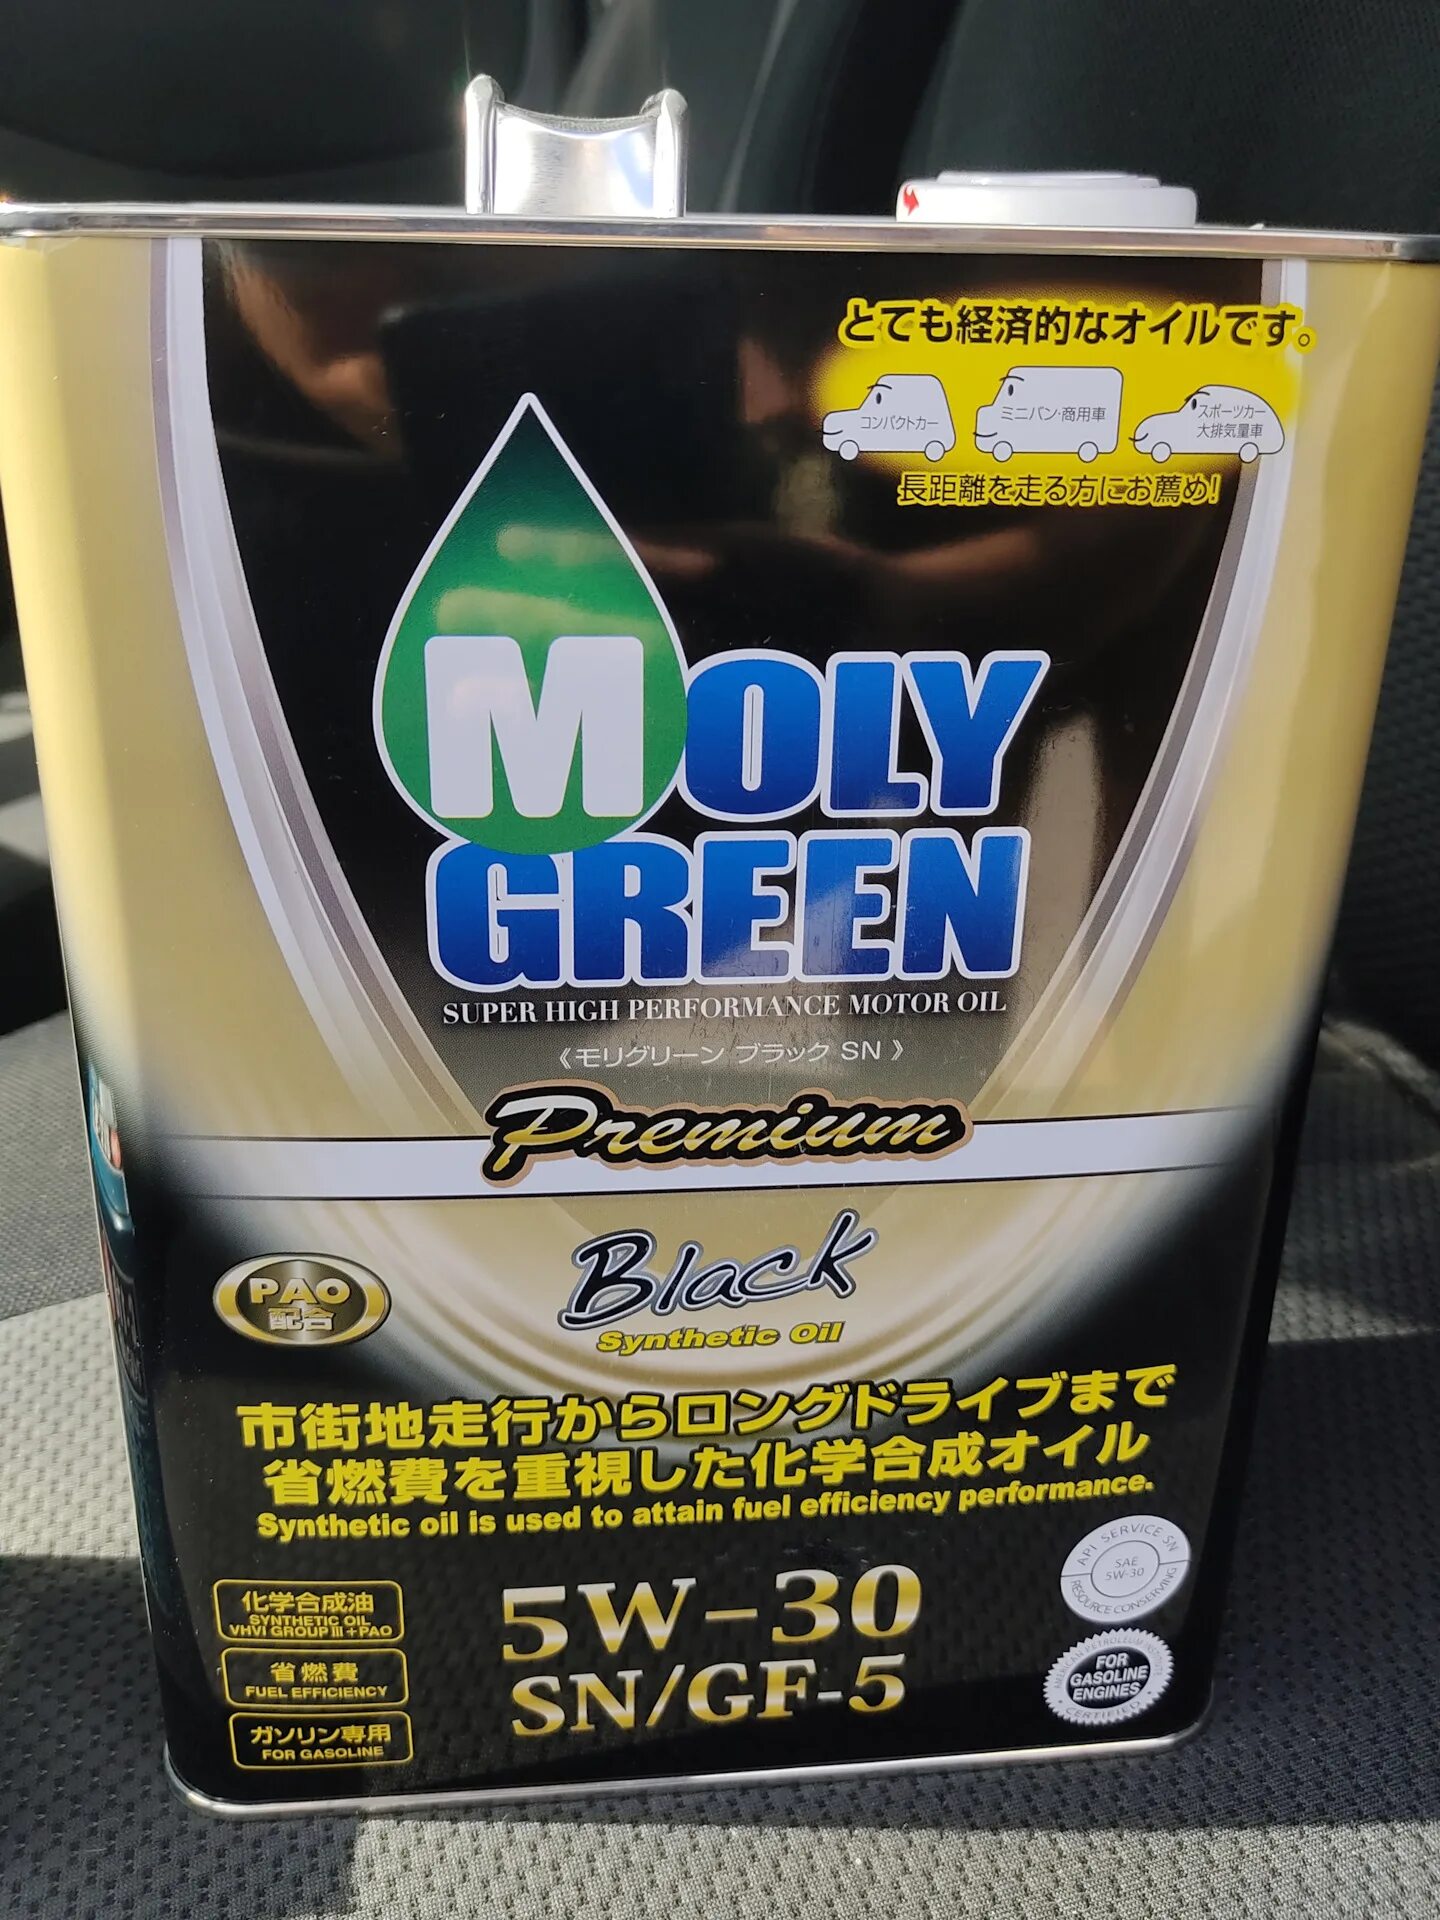 Моторное масло моли грин 5w30. Моторное масло Moly Green 5w30. Moly Green 5w30 Premium. Moly Green 5w30 Premium Black. Моли Грин премиум 5 30.